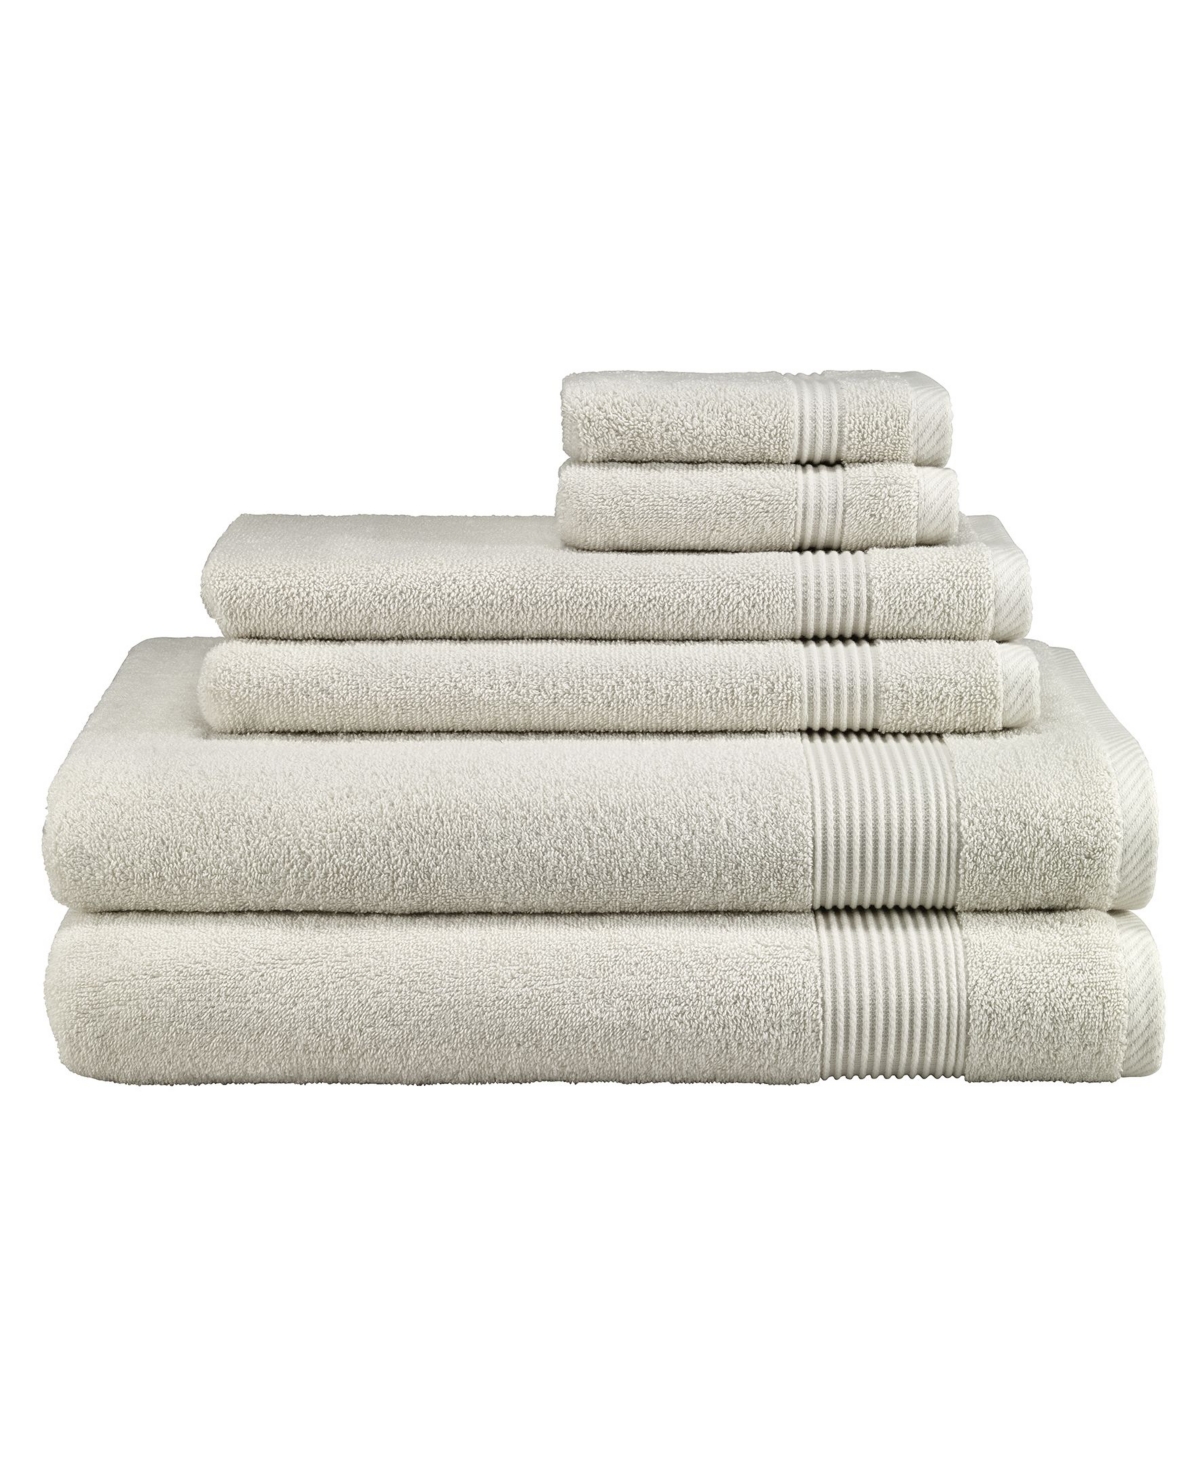 Avanti Solid 6 Piece Towel Sets Bedding